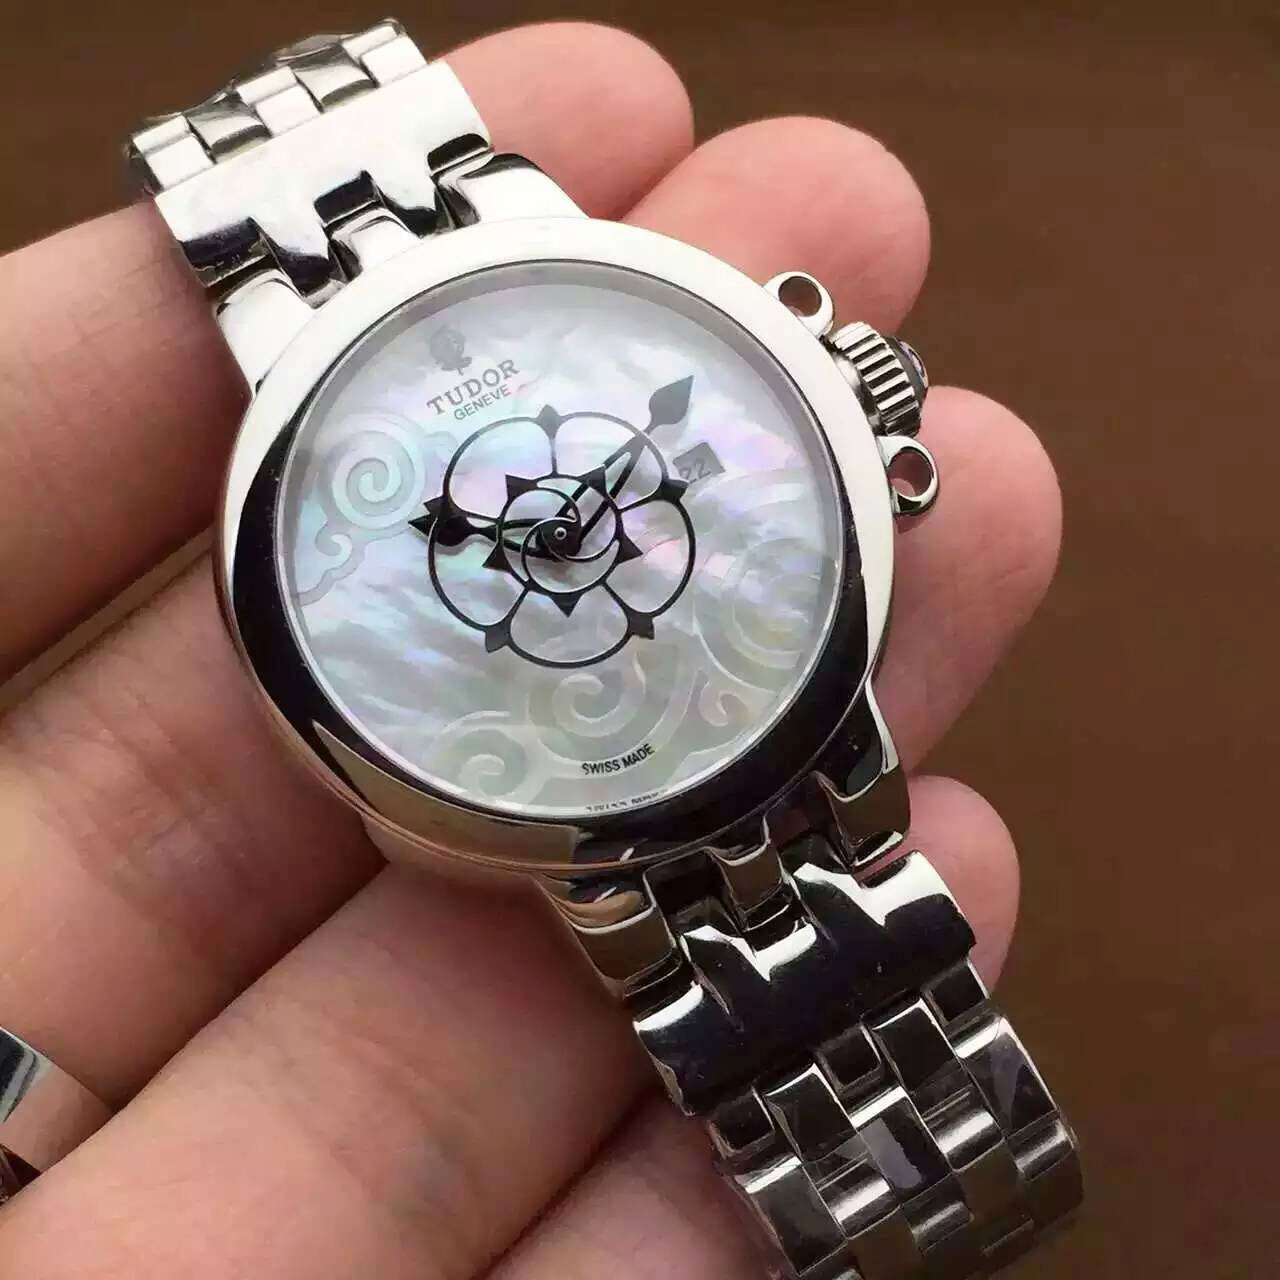 3A帝舵 TUDOR 玫瑰系列新品上市 搭載進口機械機芯 貝母錶盤設計 玫瑰形秒針